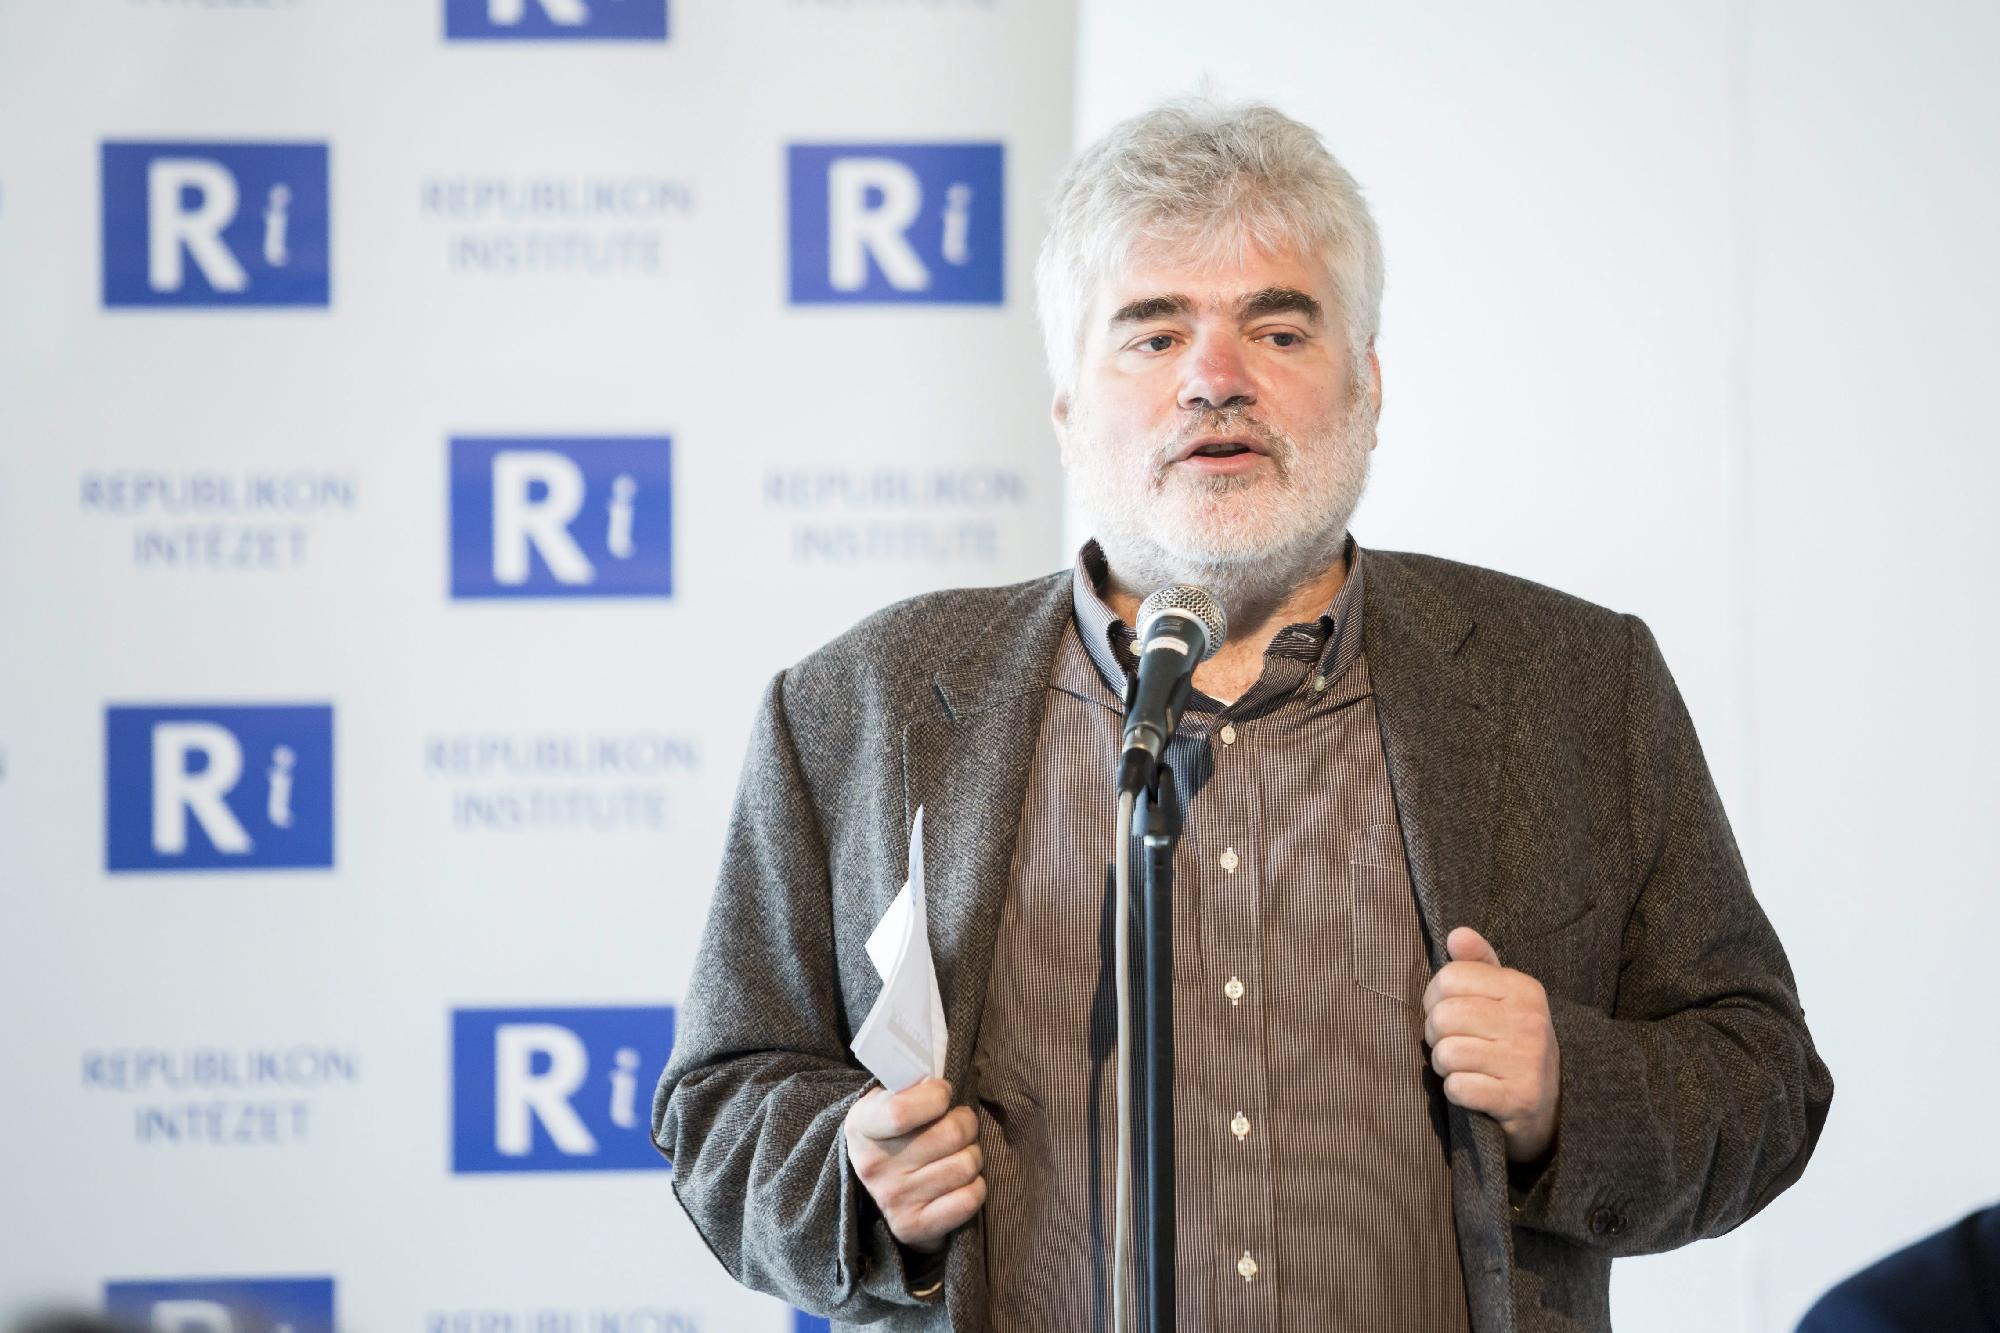 A Republikon Intézet konferenciája Budapesten